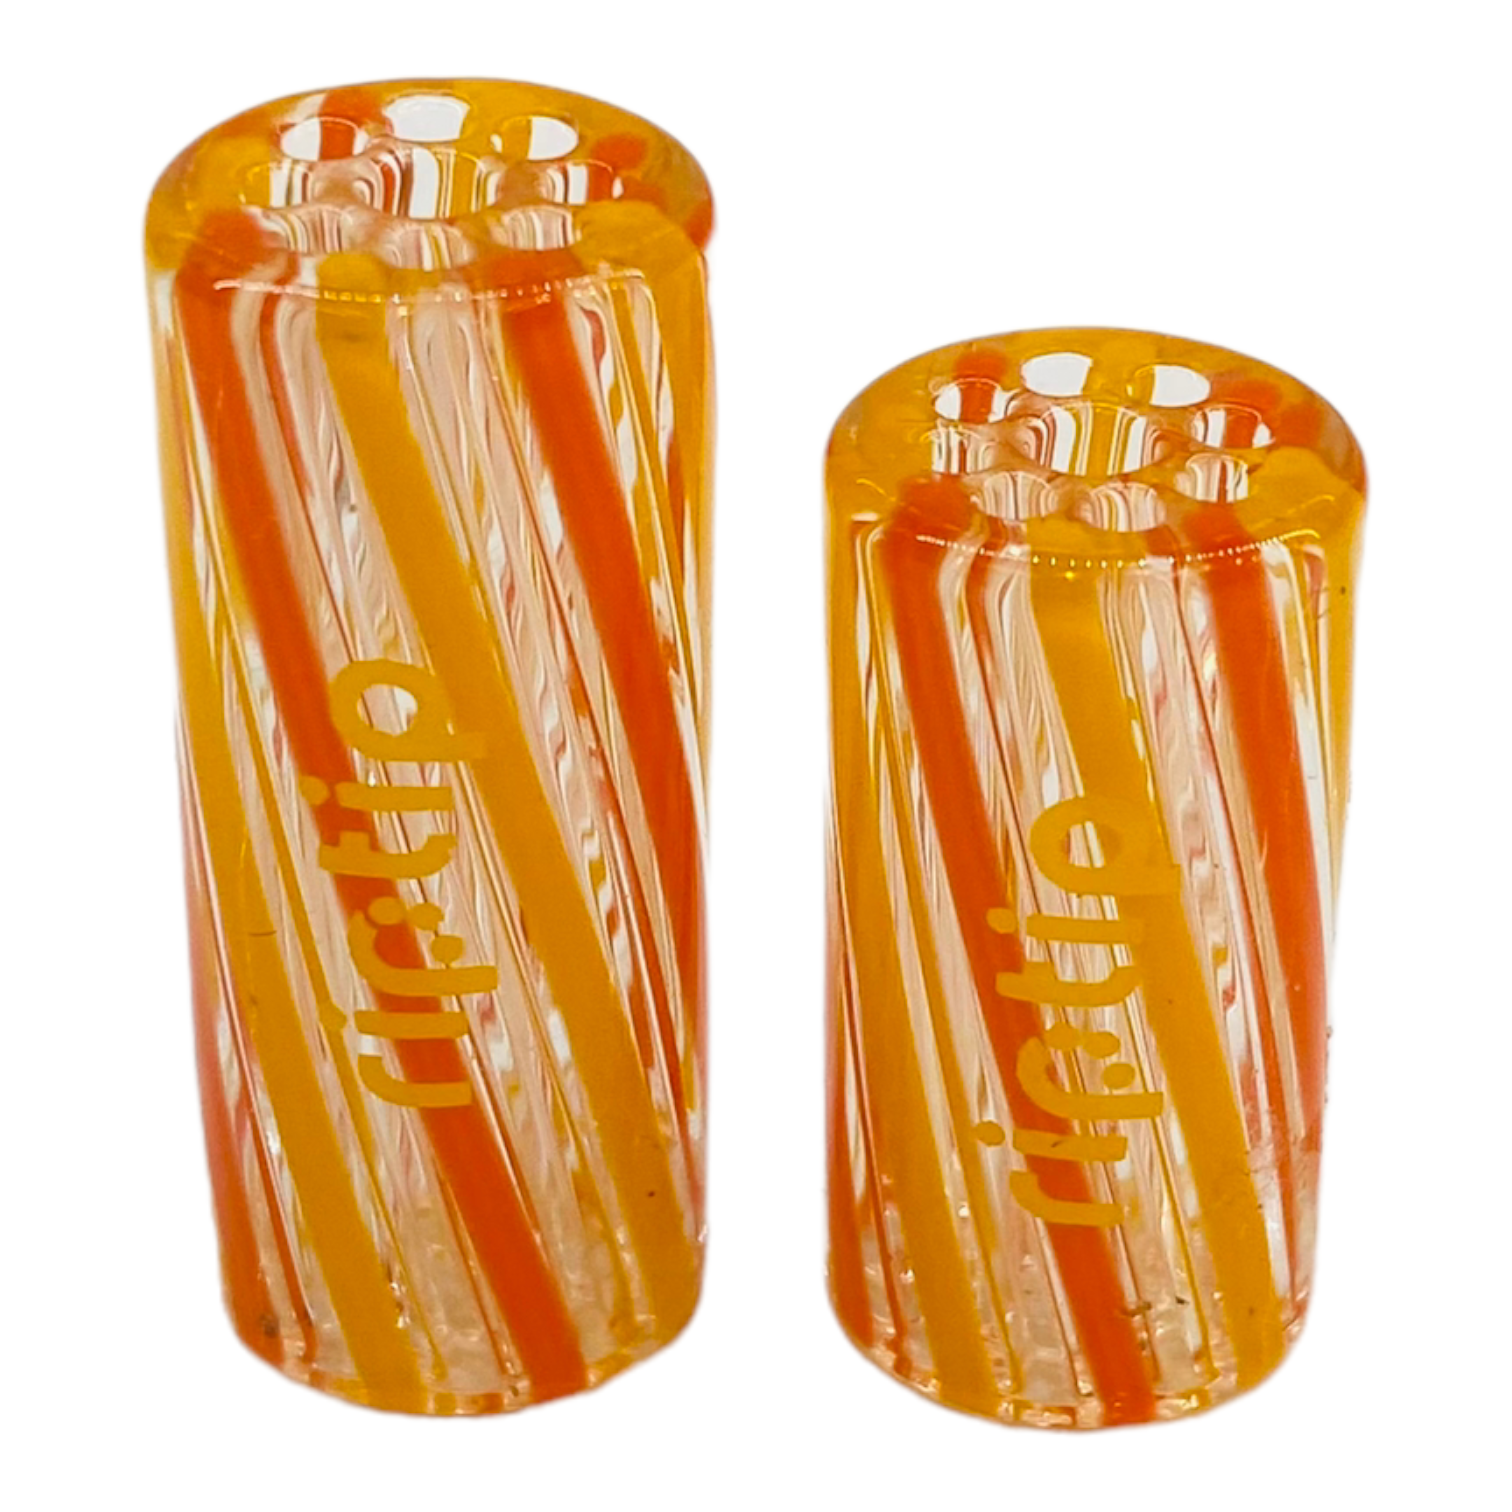 Gordo Scientific - RipTip - Citrus Orange & Yellow 13mm Wide Extra Long